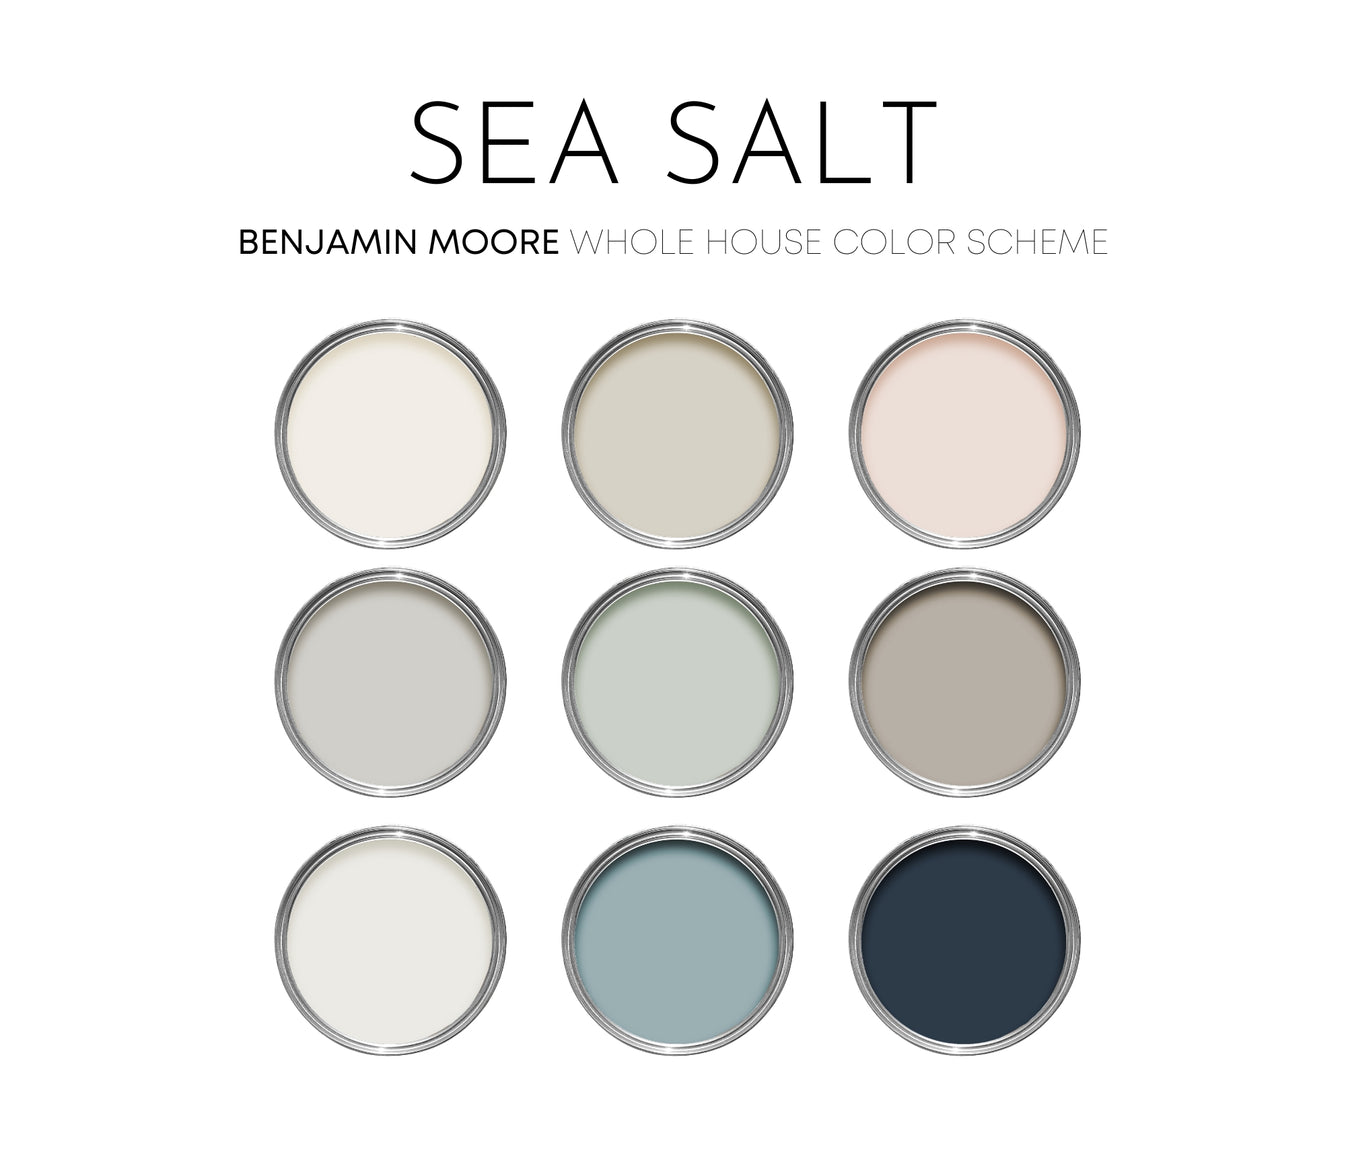 Sea Salt Benjamin Moore Paint Palette, Modern Coastal Interior Paint C ...